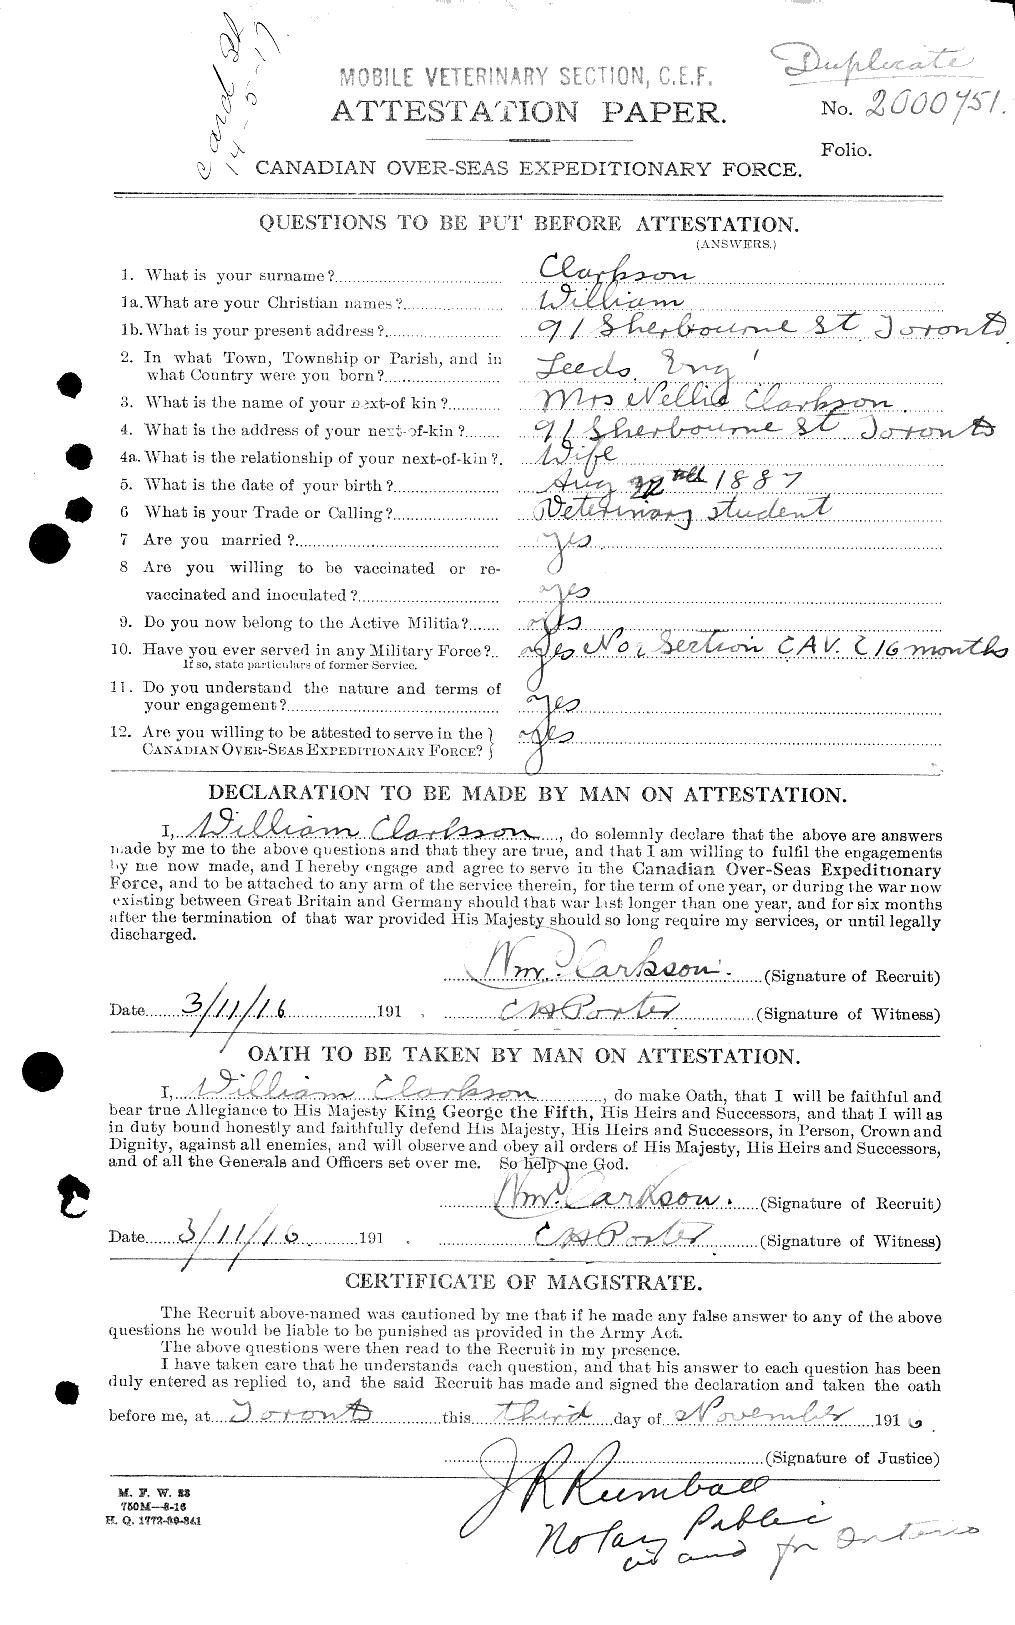 Dossiers du Personnel de la Première Guerre mondiale - CEC 019019a